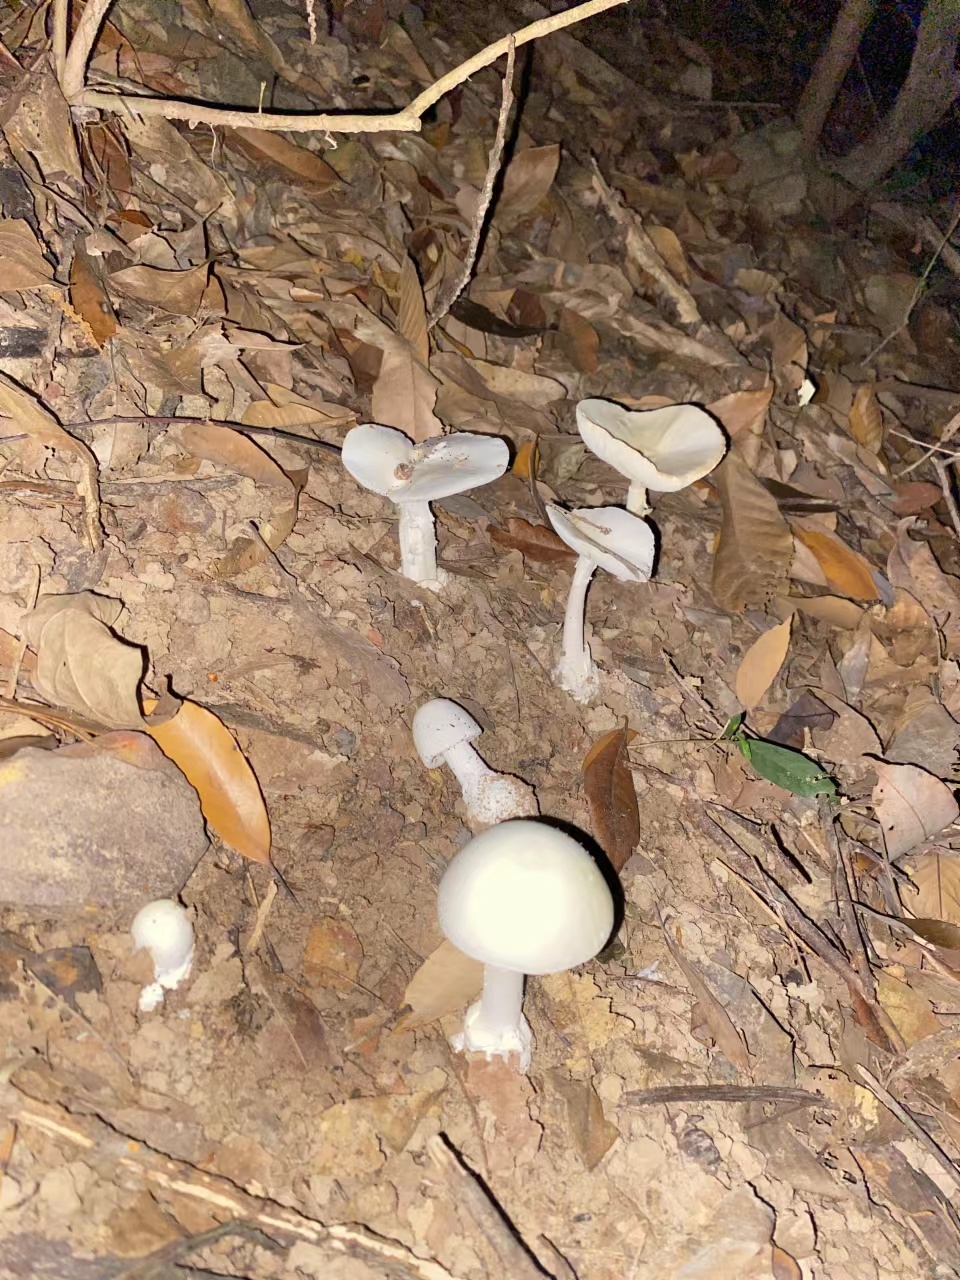 野生蘑菇进入生长旺盛期，谨防毒蘑菇中毒